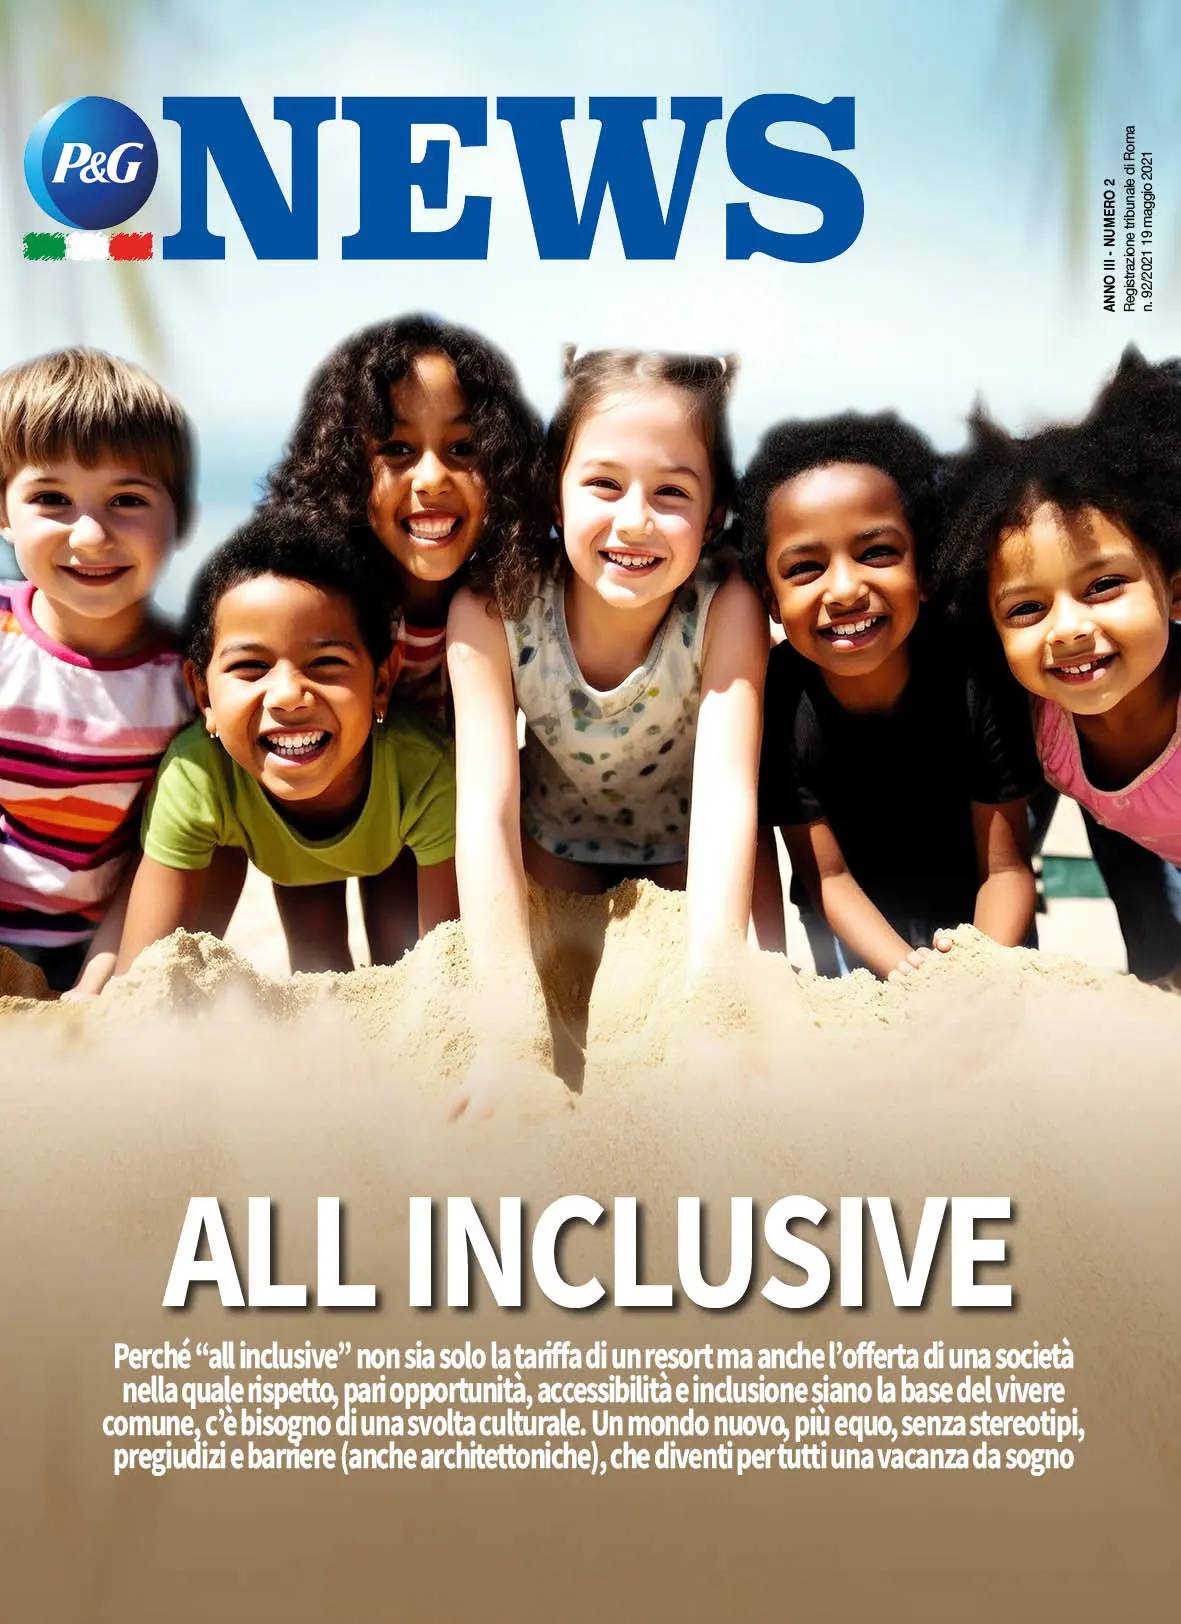 Copertina Magazine Anno 3 numero 2. Titolo "All Inclusive".